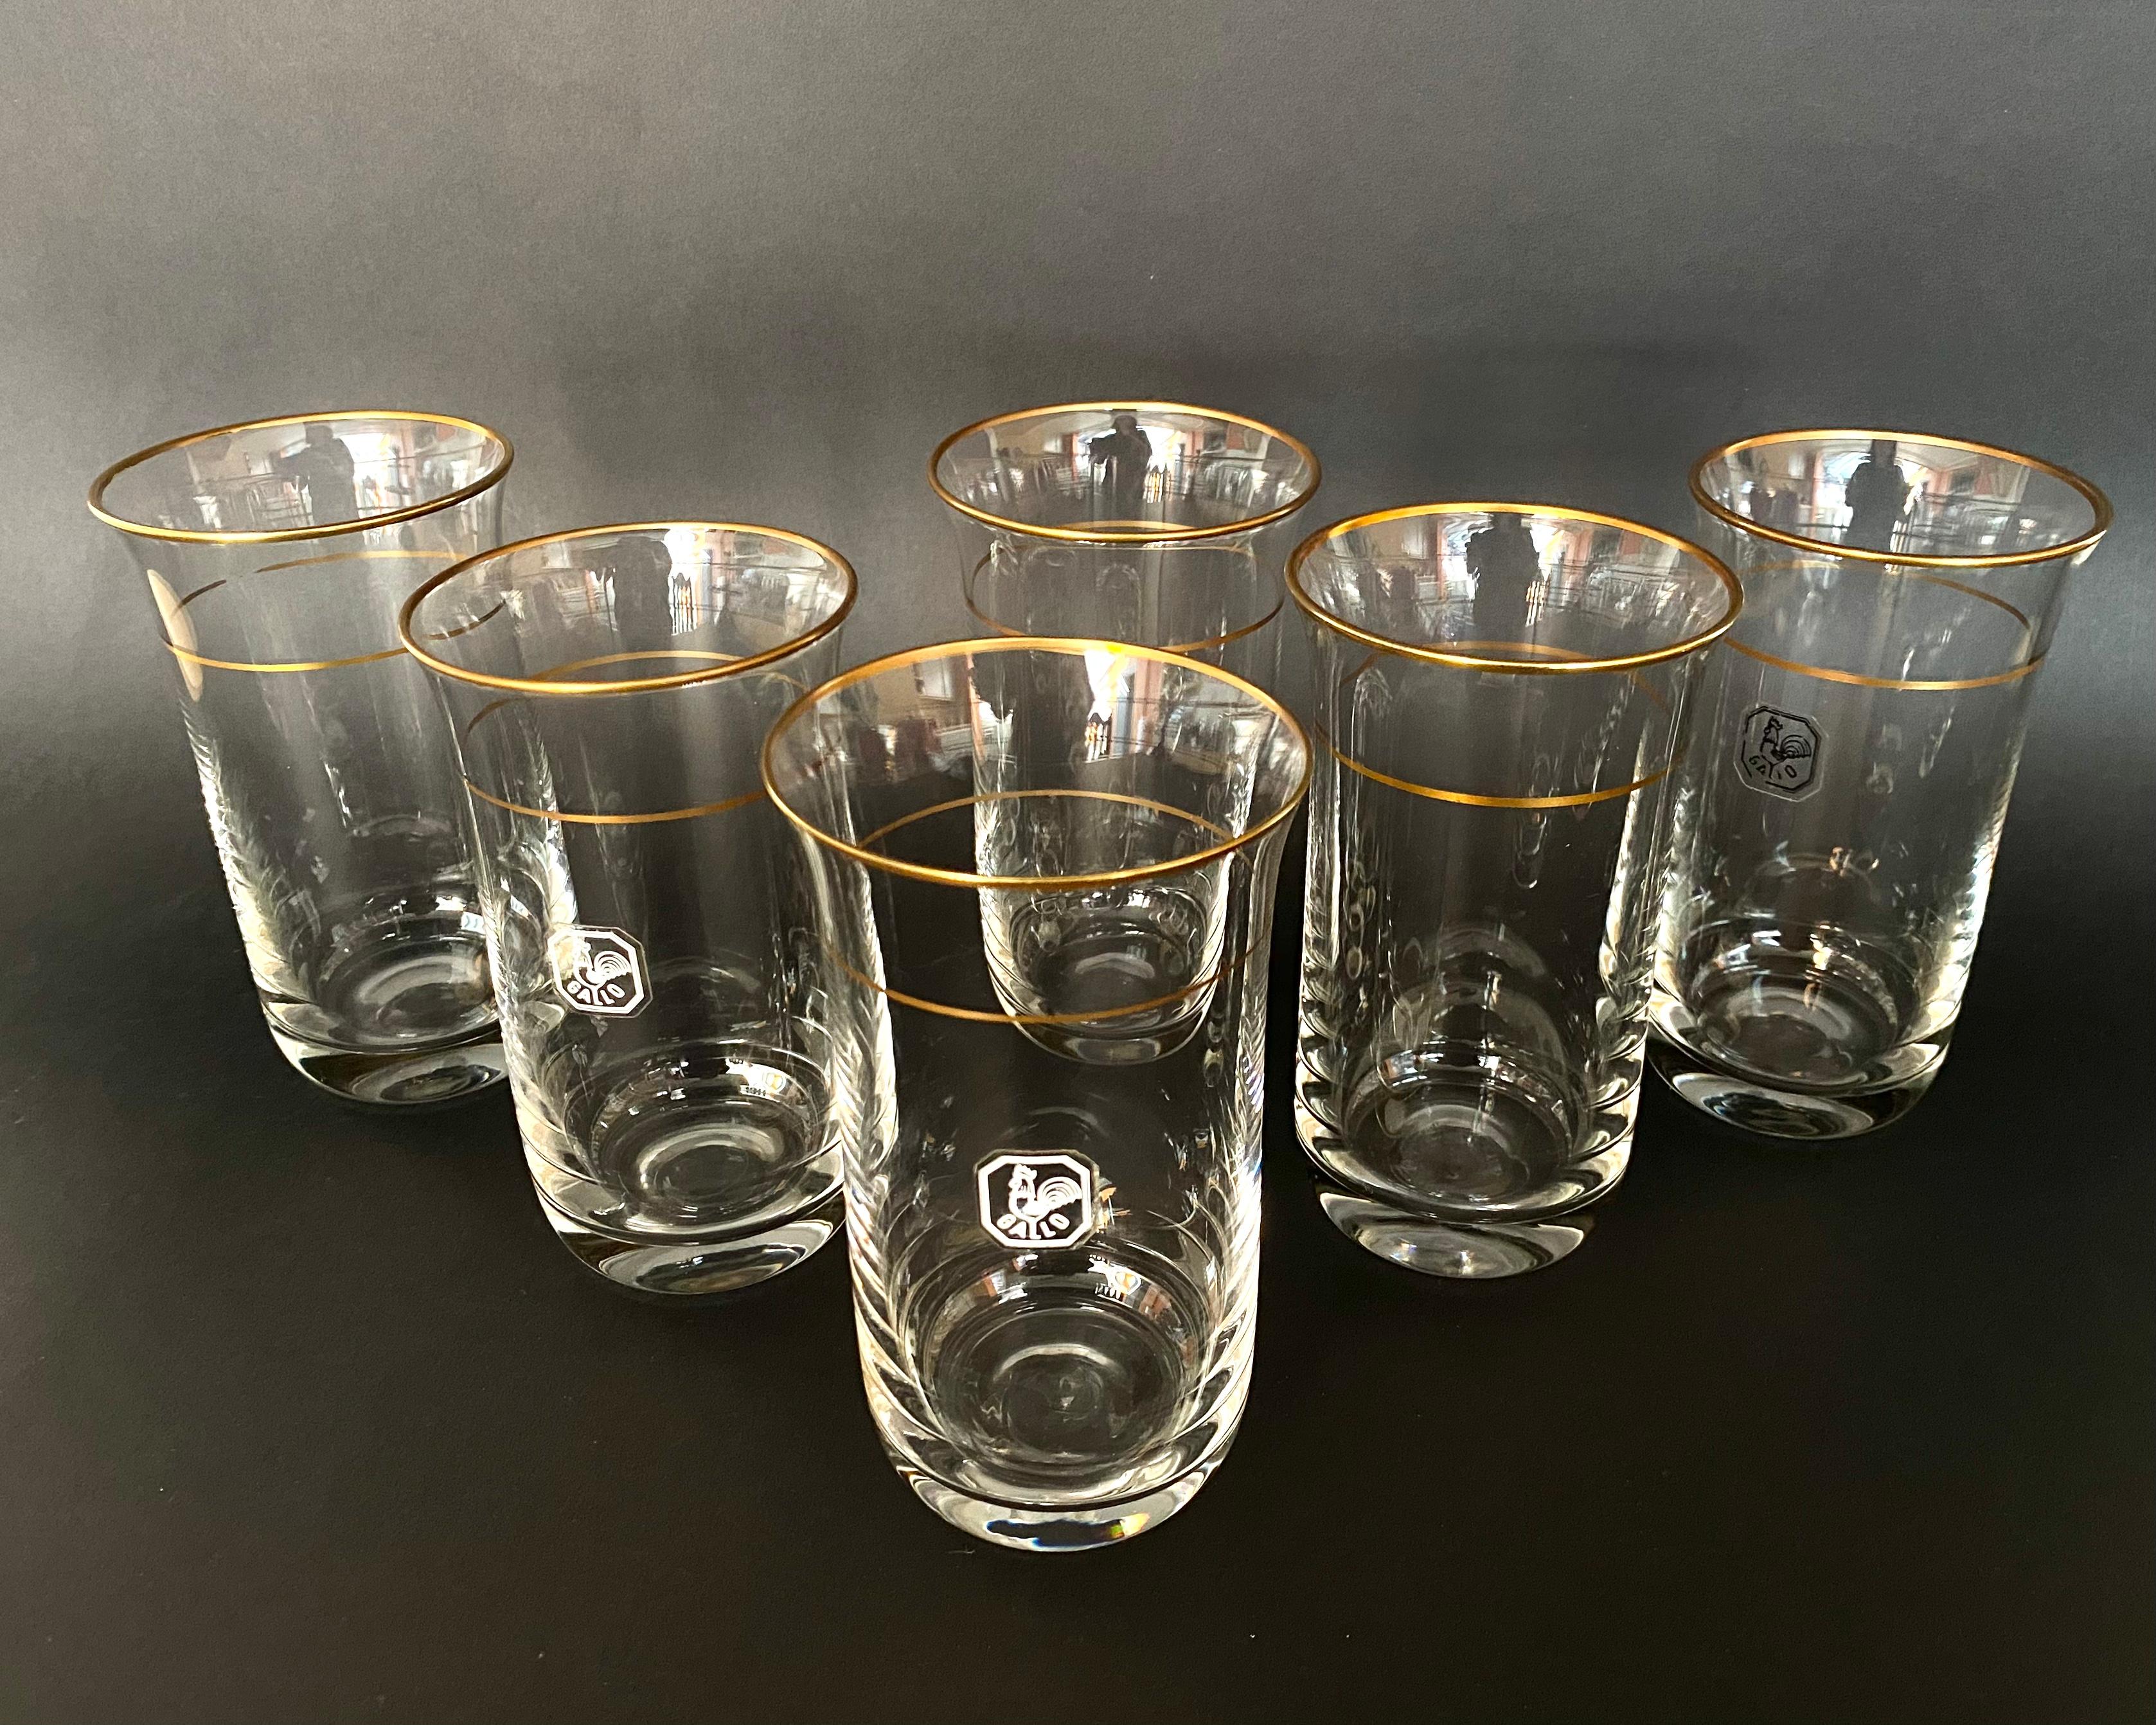 Verres à eau en cristal vintage GALLO, Allemagne, années 1970

Verres à eau en cristal vintage avec bord doré, set de 6 pièces, produit en Allemagne par le fabricant GALLO, circa 1970. 

Les verres Gallo sont réputés pour leur beauté inégalée et